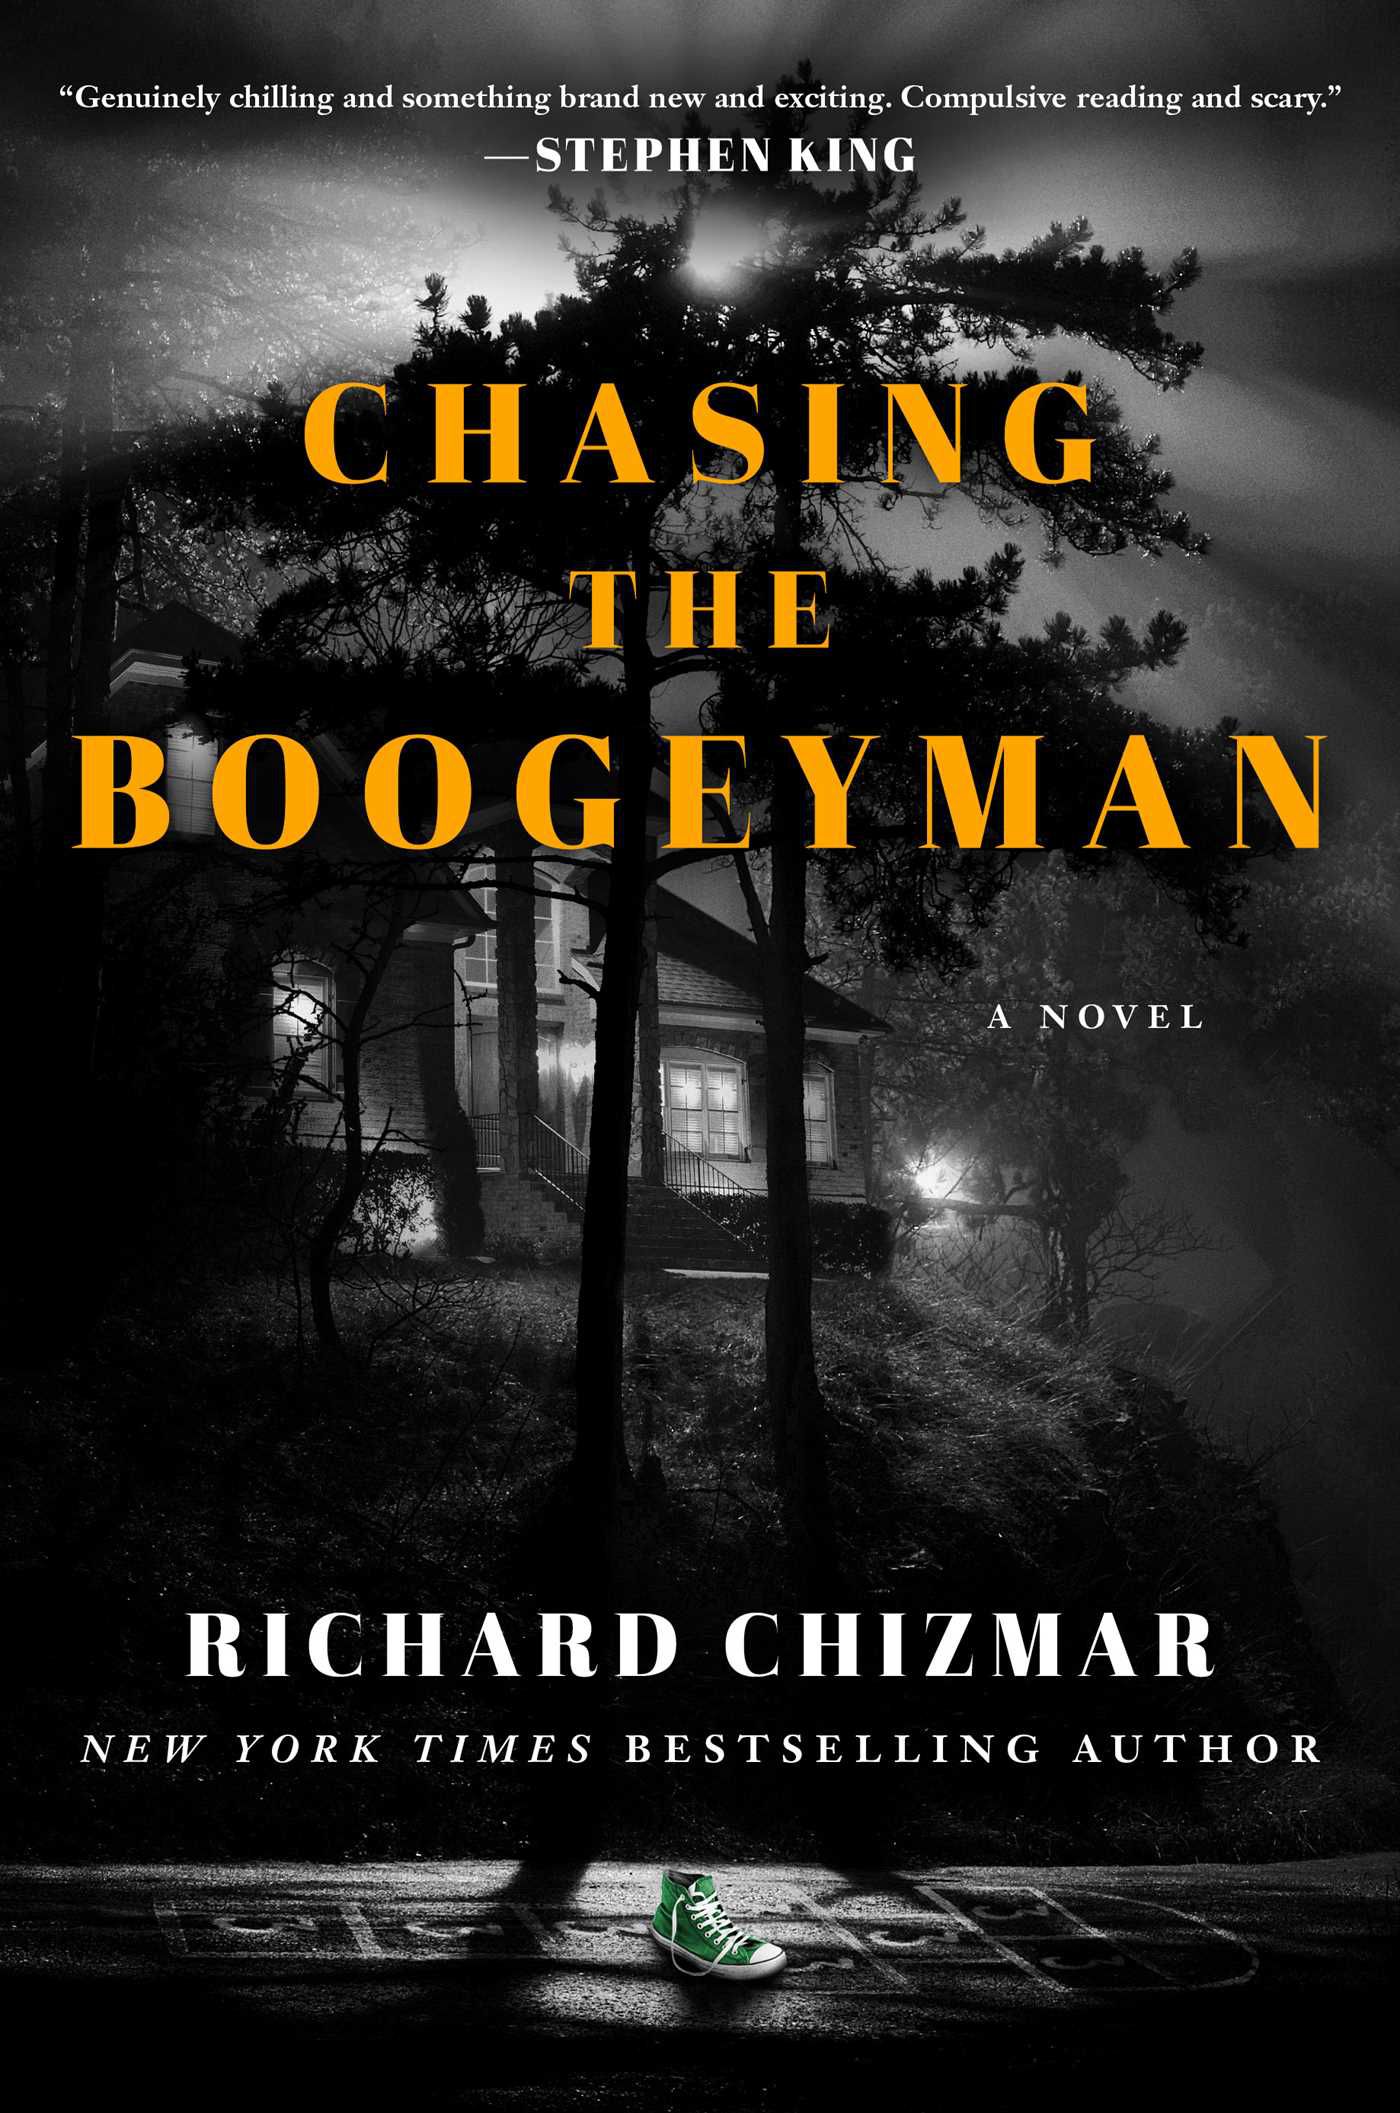 Couverture de Chasing the Boogeyman de Richard Chizmar